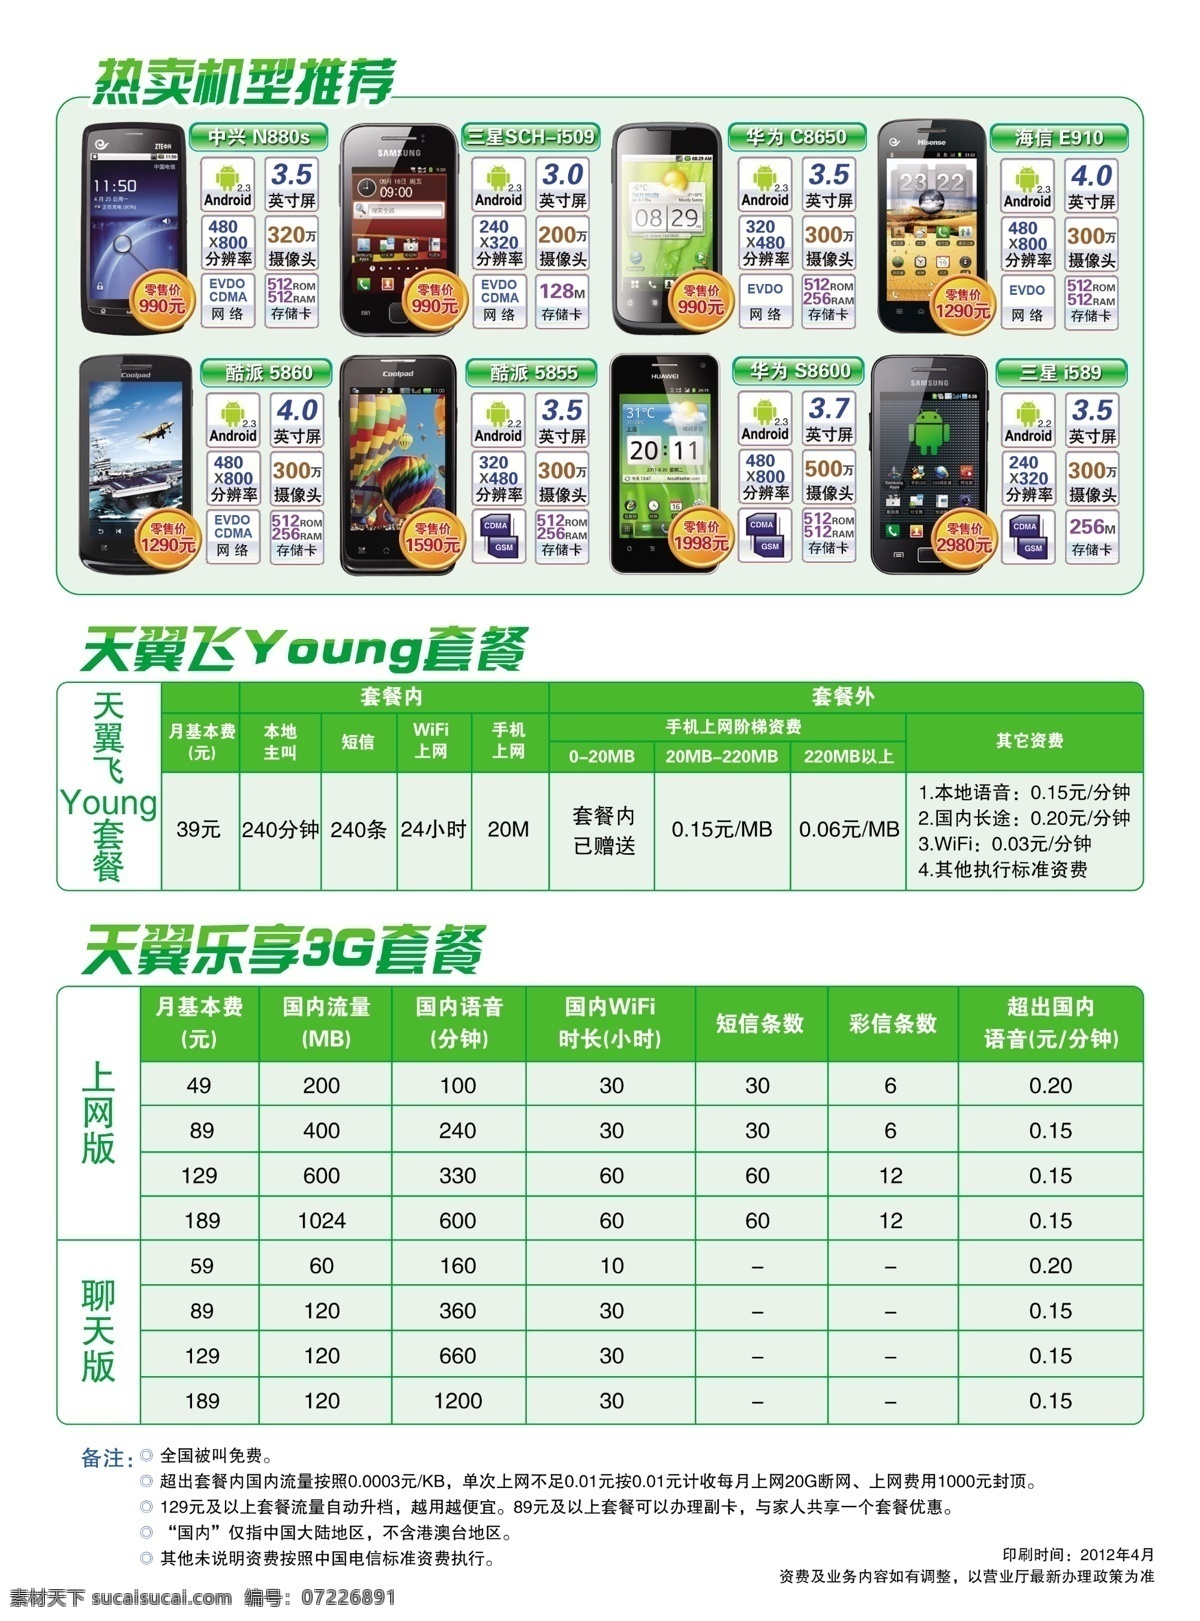 中国电信 dm宣传单 广告设计模板 手机 天翼 源文件 乐享3g套餐 矢量图 现代科技